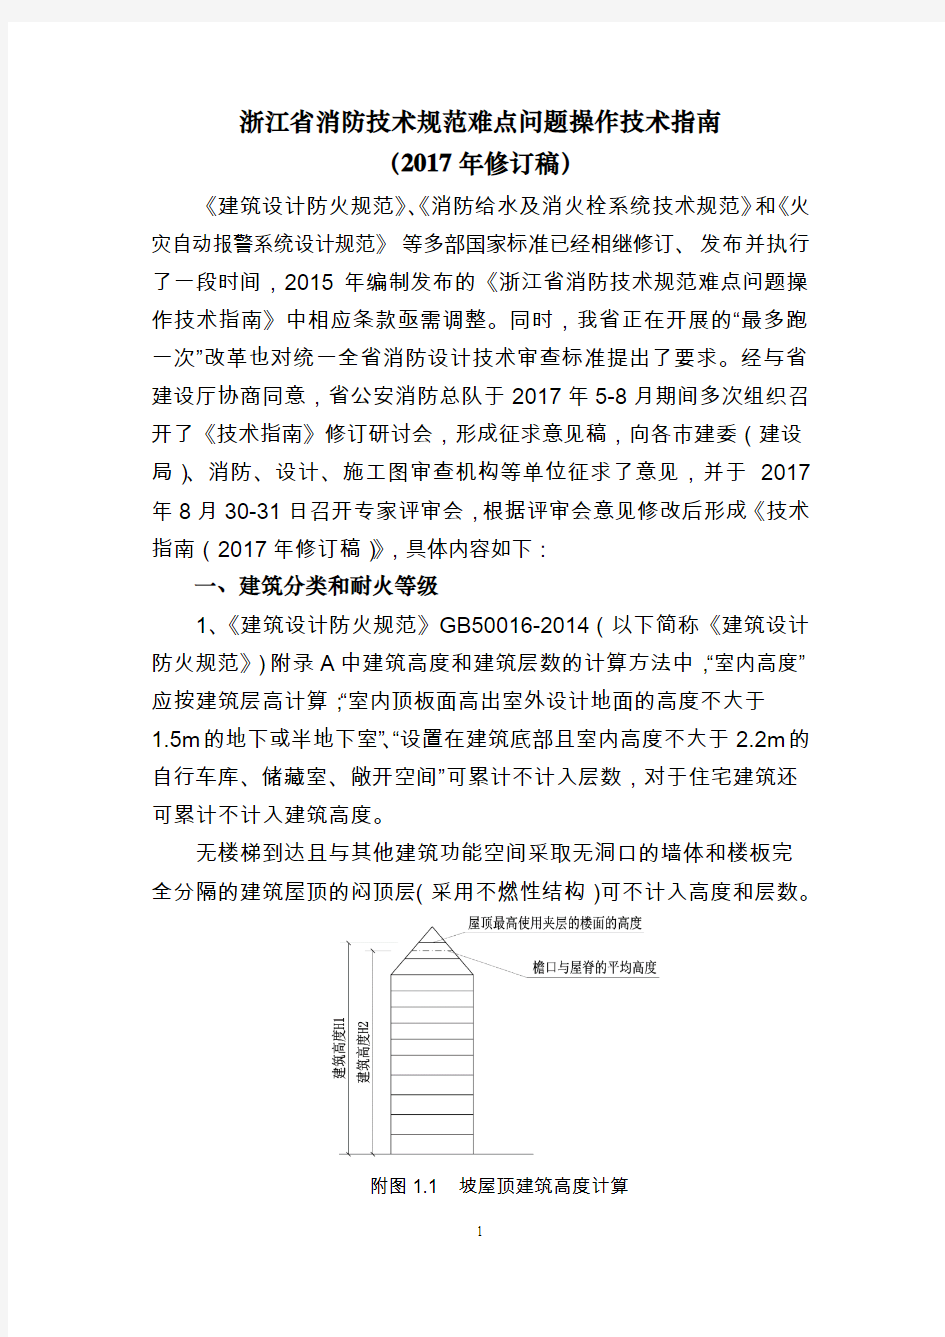 浙江省消防技术规范难点问题操作技术指南17-11-21(最终稿)